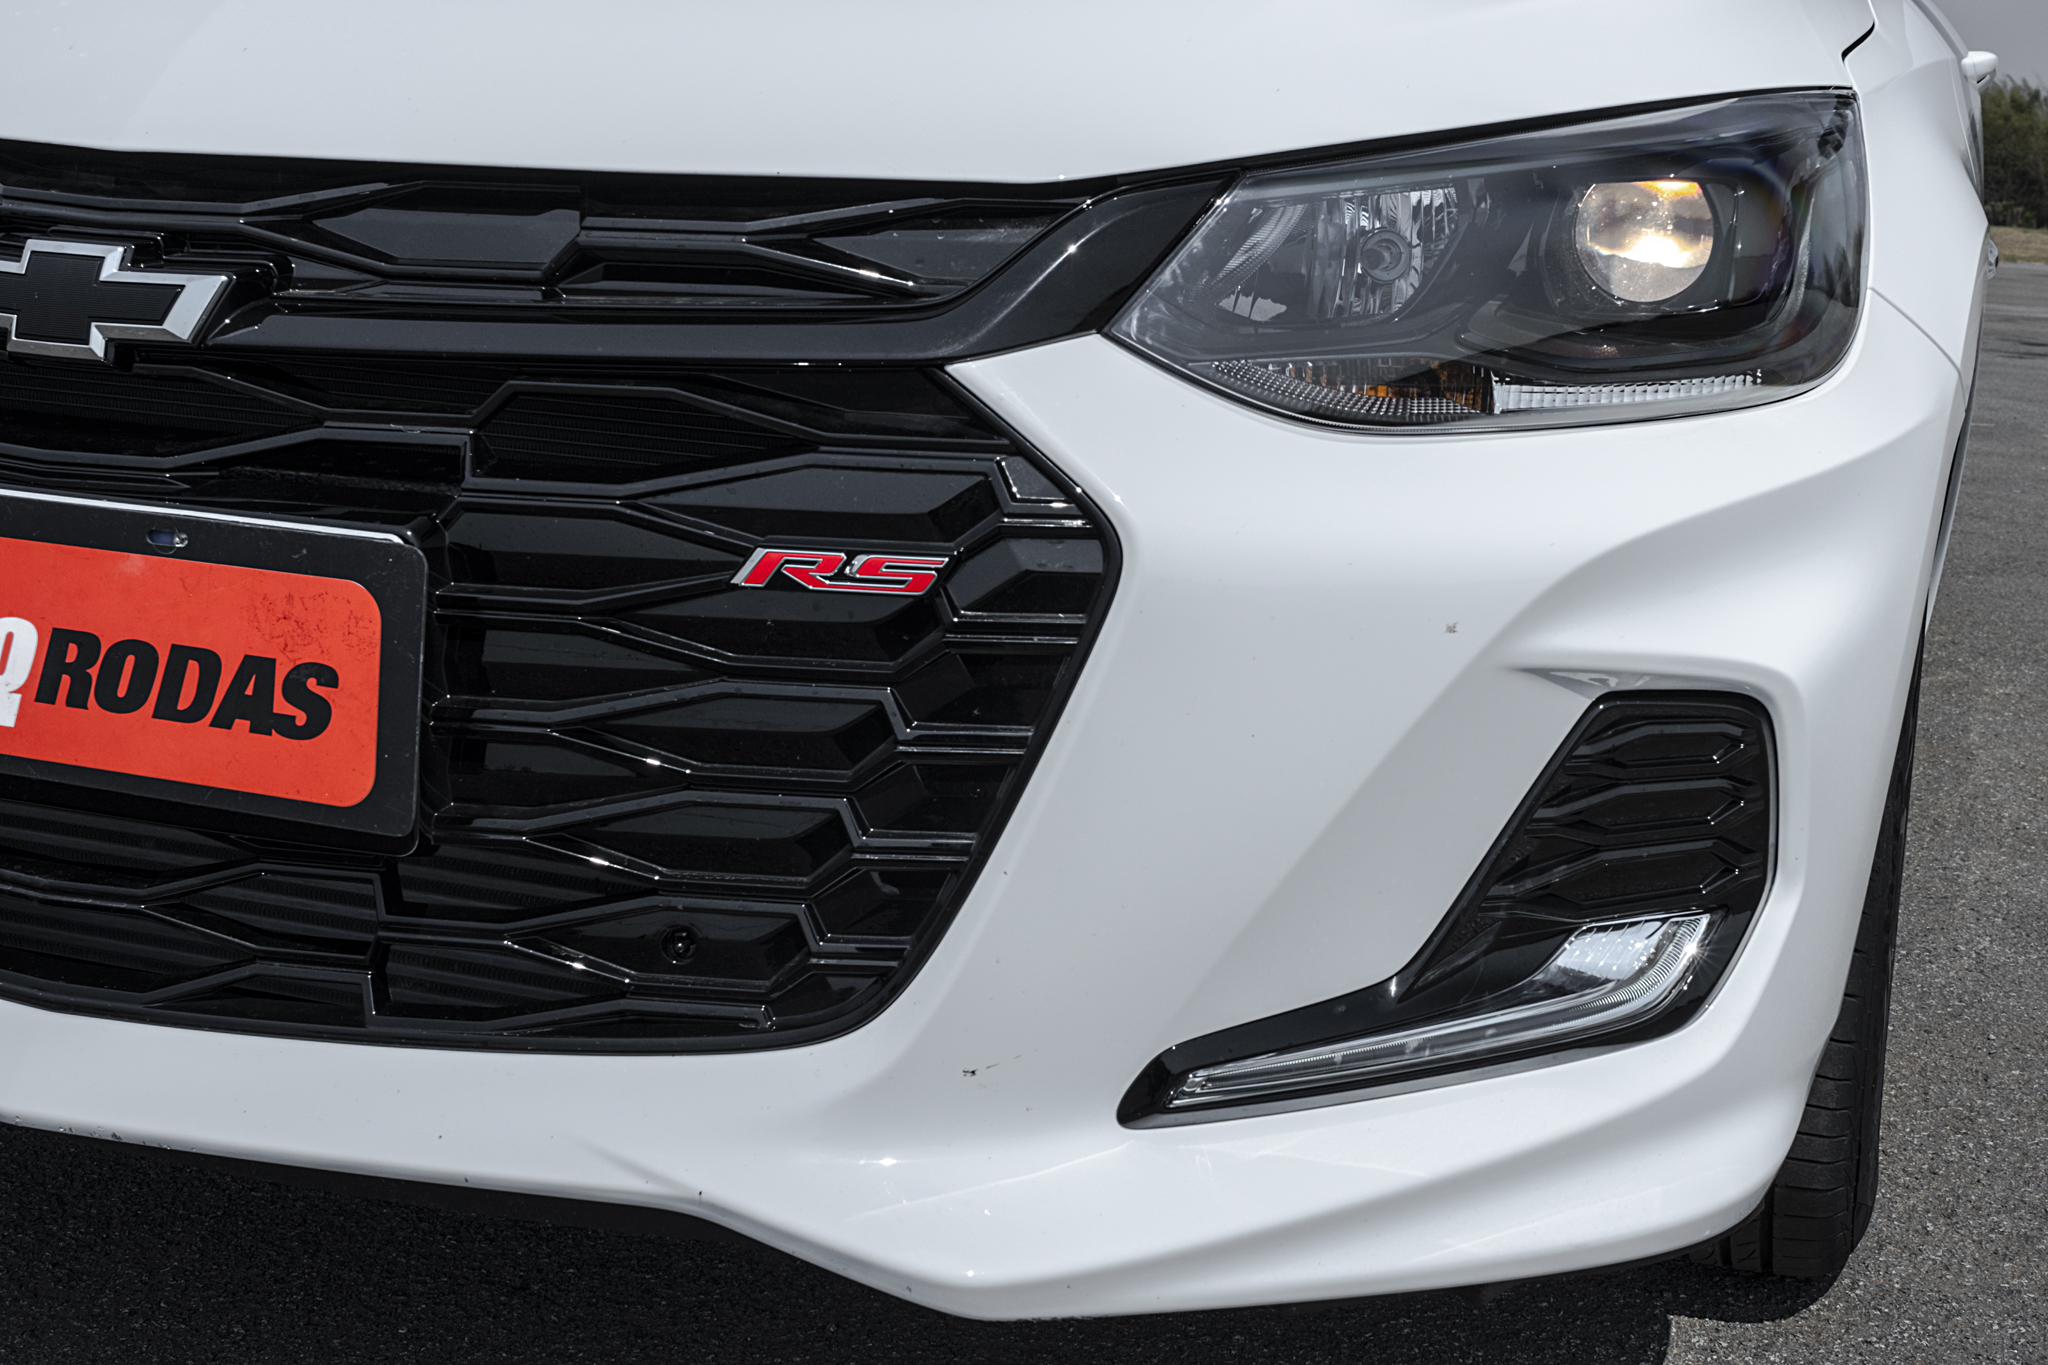 Teste: Novo Chevrolet Onix RS tem visual instigante, mas emoção é